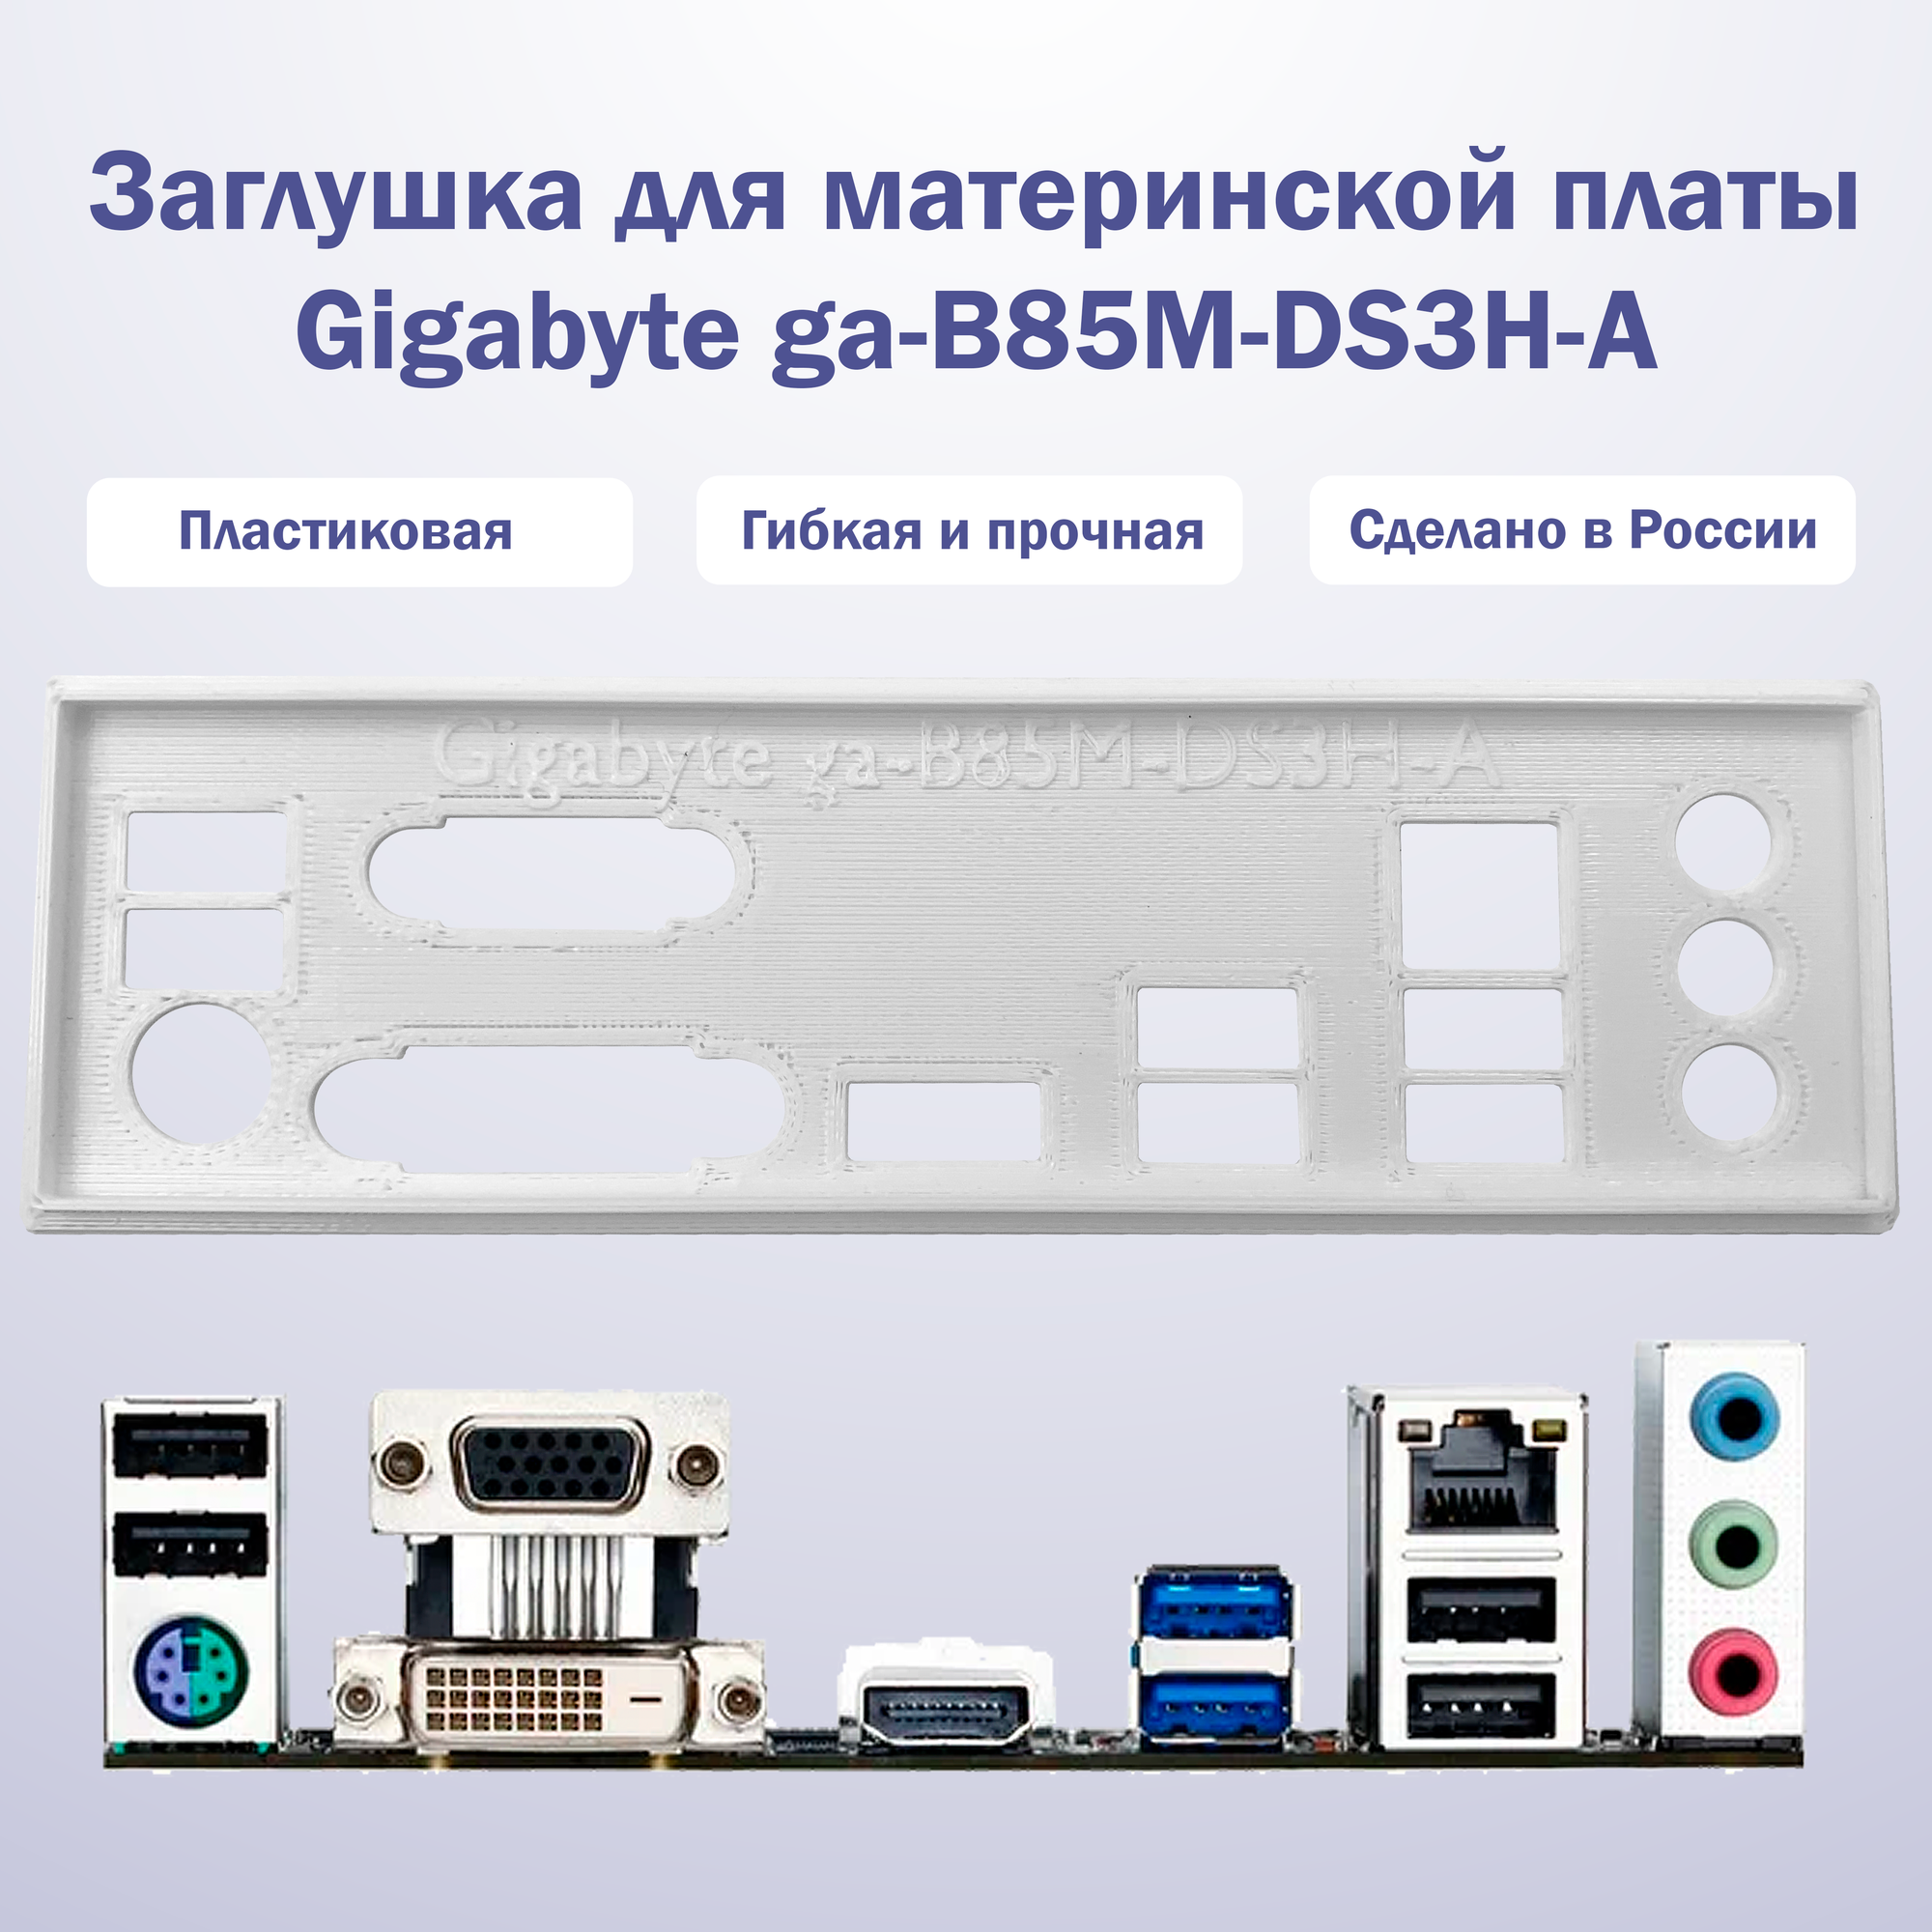 Заглушка для компьютерного корпуса к материнской плате Gigabyte ga-B85M-DS3H-A